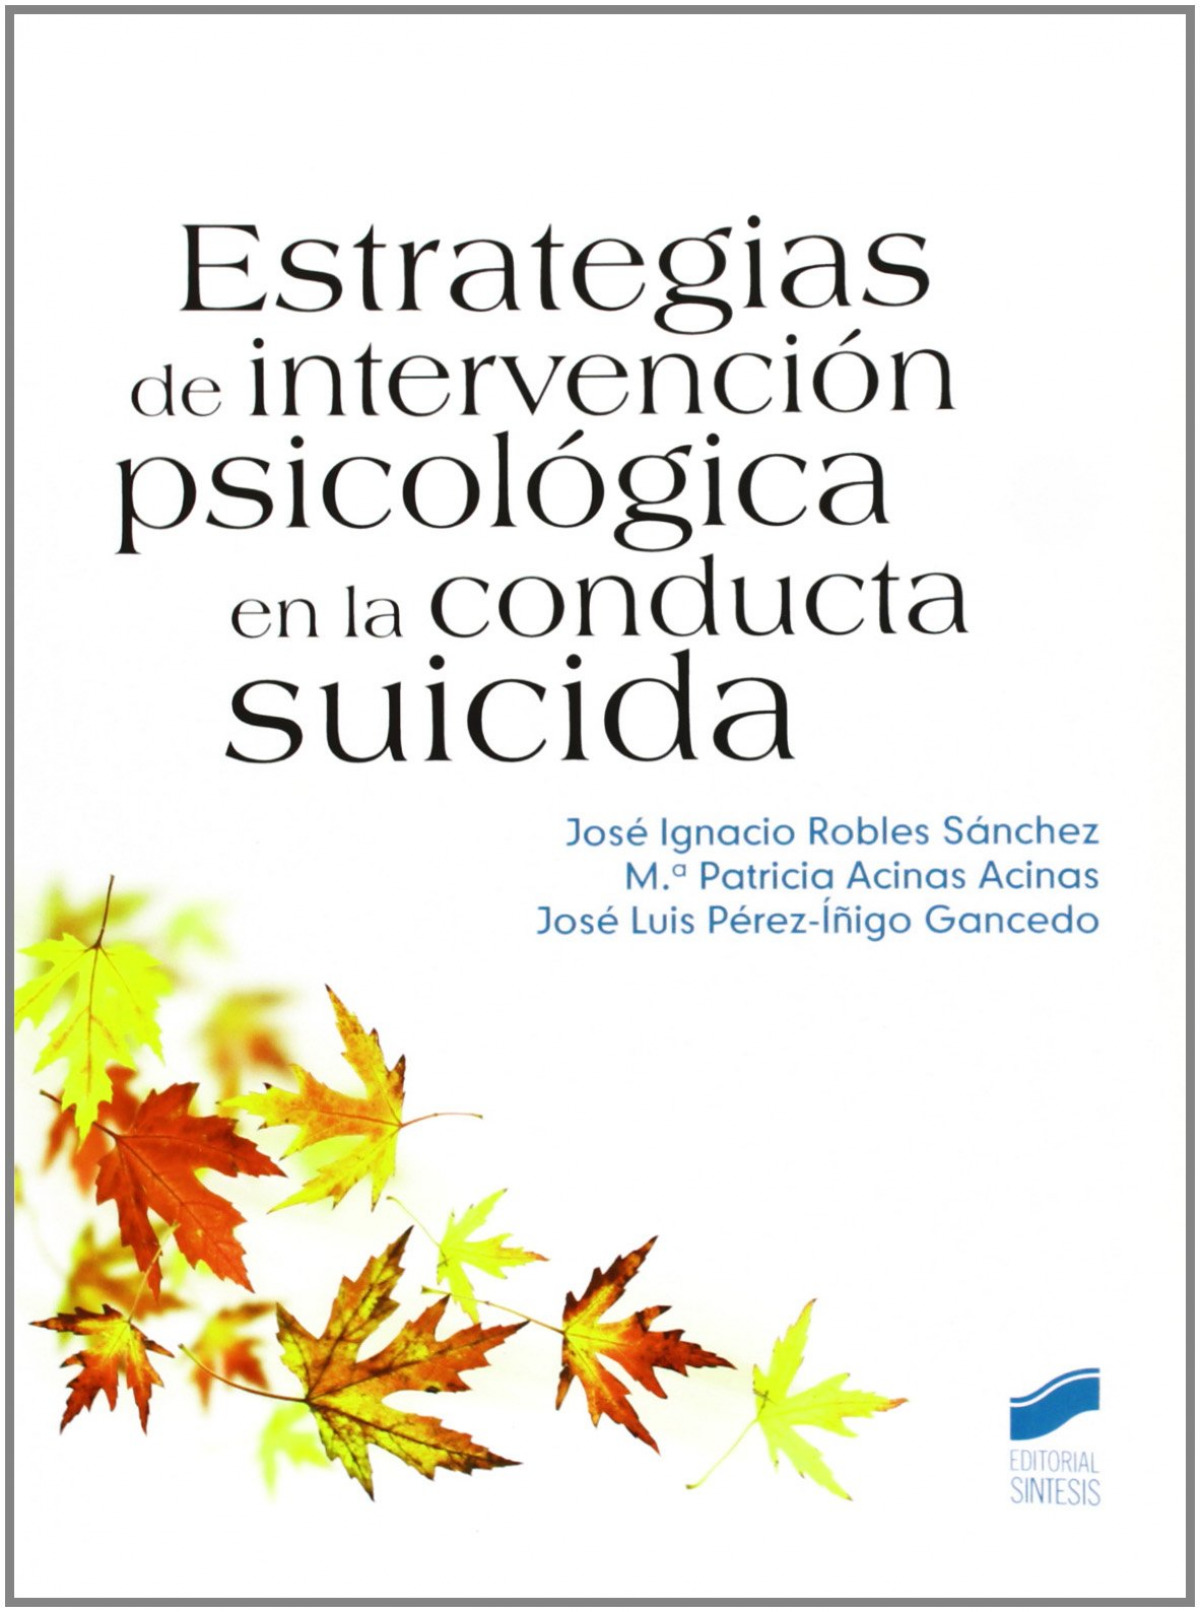 Estrategias de intervencion psicologica conducta suicida. - Aa Vv